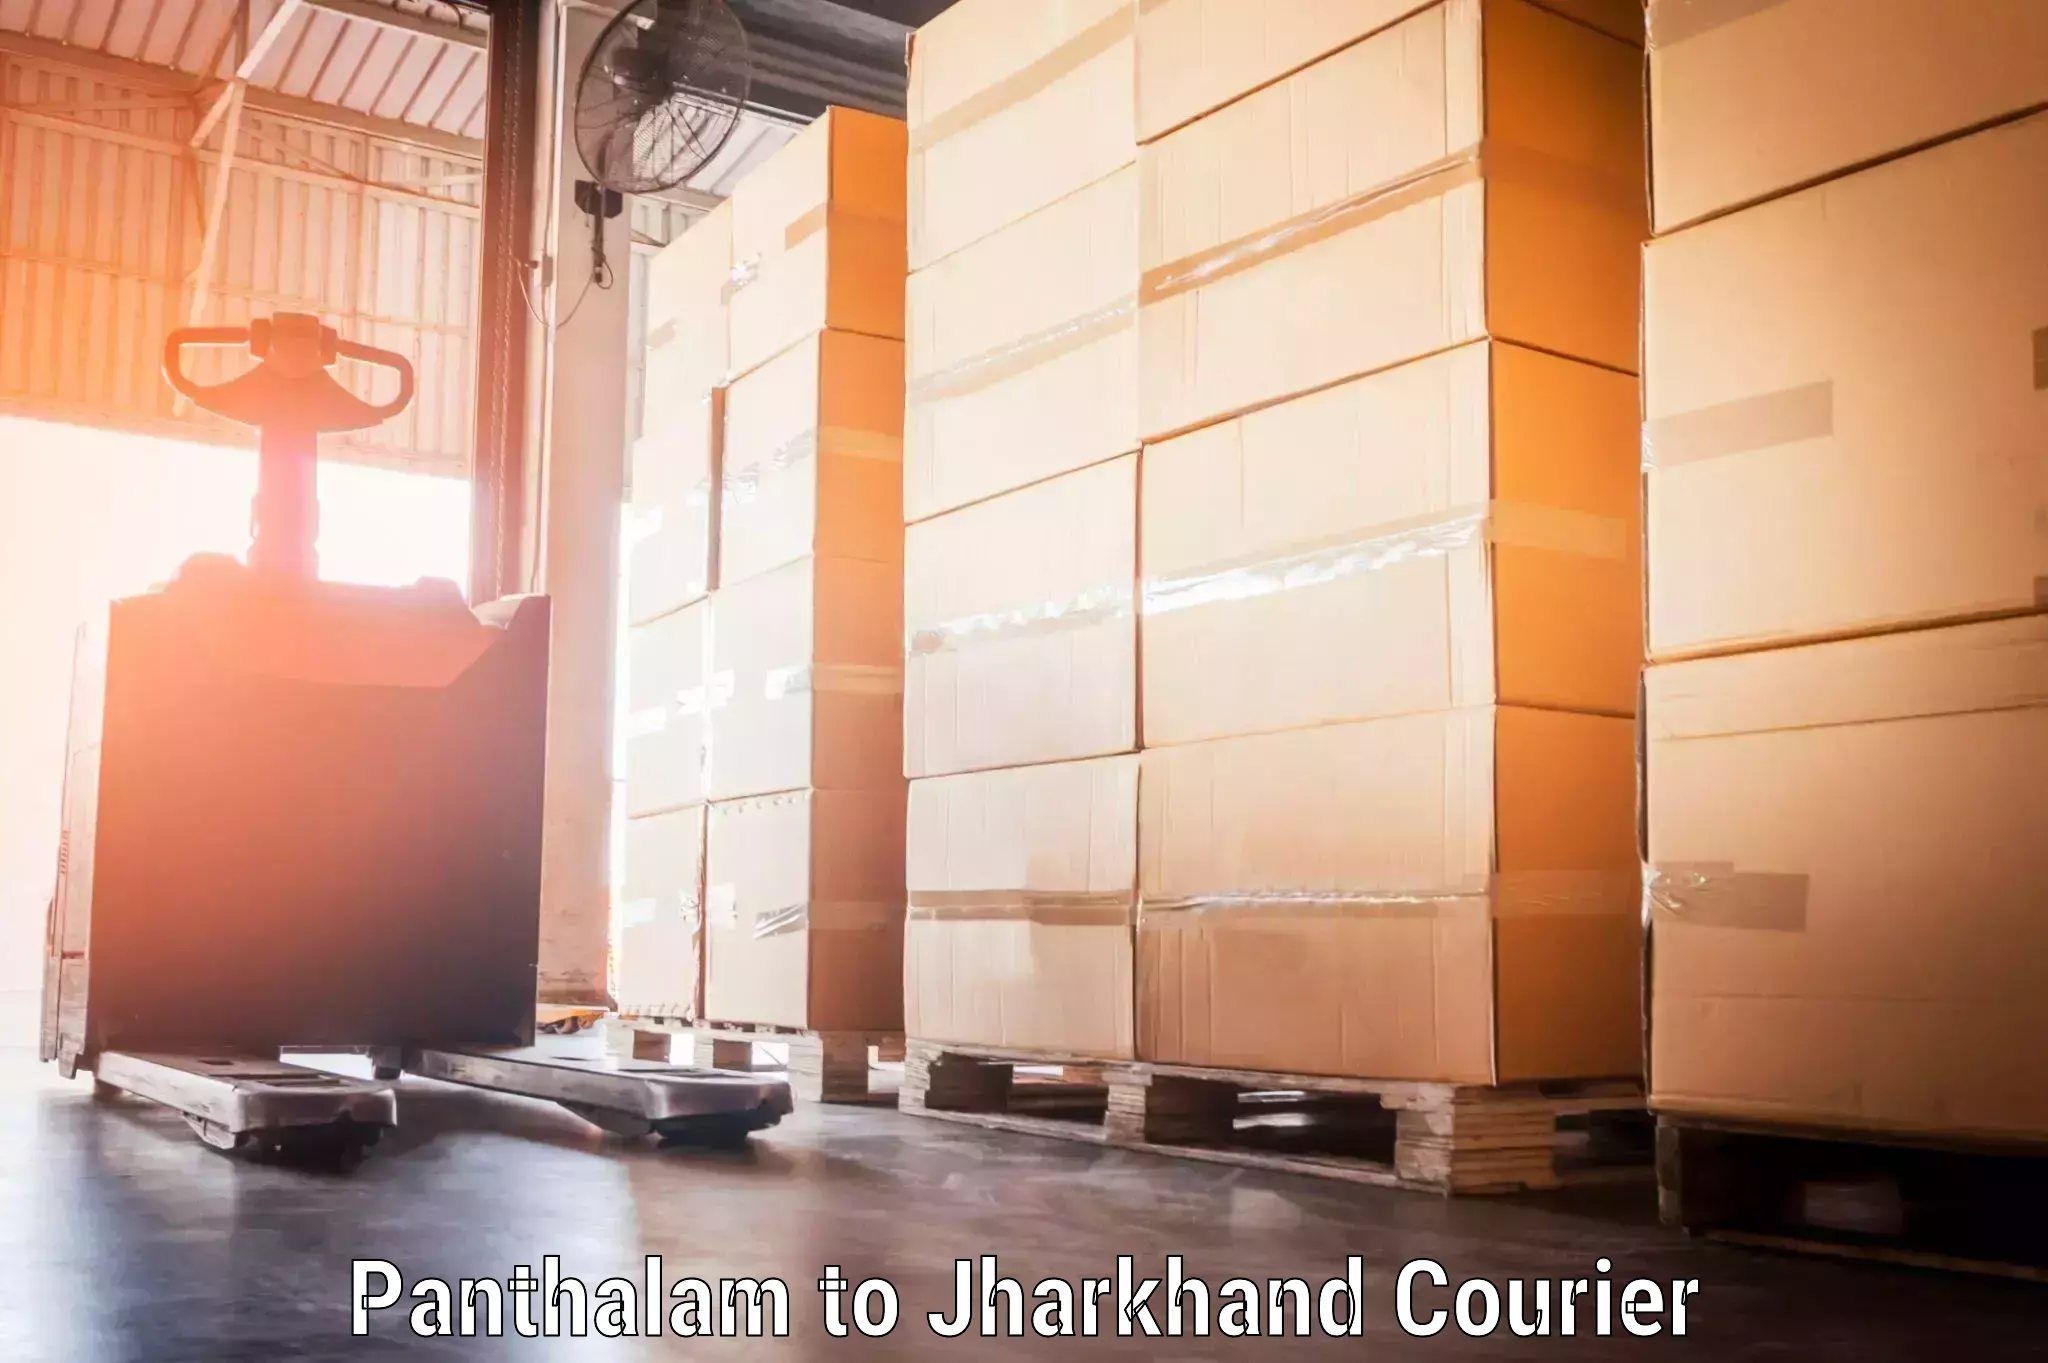 Baggage shipping experts Panthalam to Chhatarpur Palamu